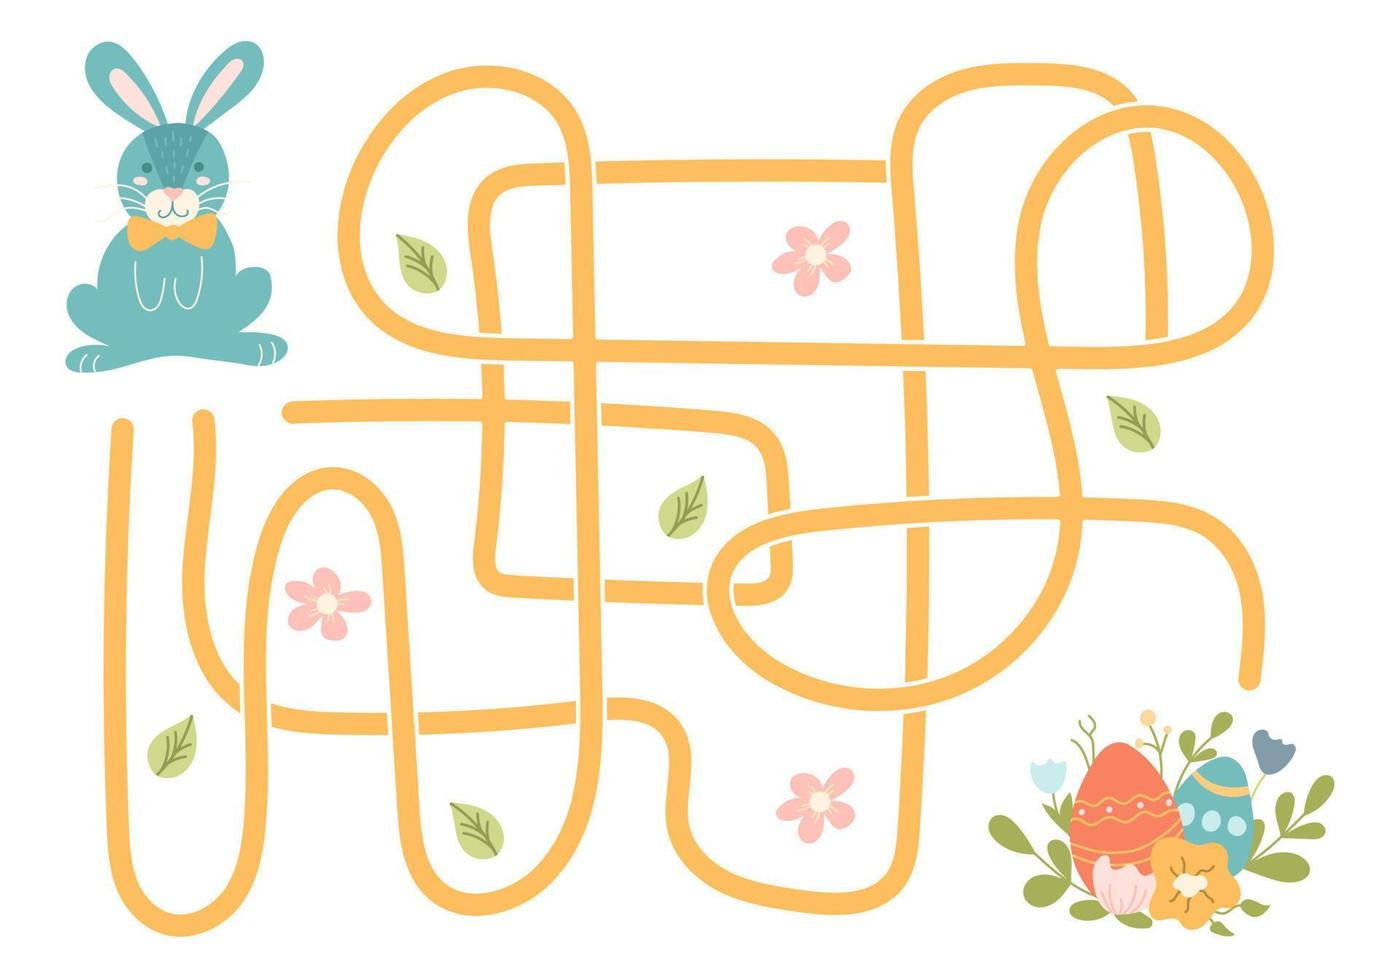 laberinto, ayuda al conejo a encontrar el camino correcto hacia los huevos de pascua. búsqueda lógica para los niños. linda ilustración para libros infantiles, juego educativo vector